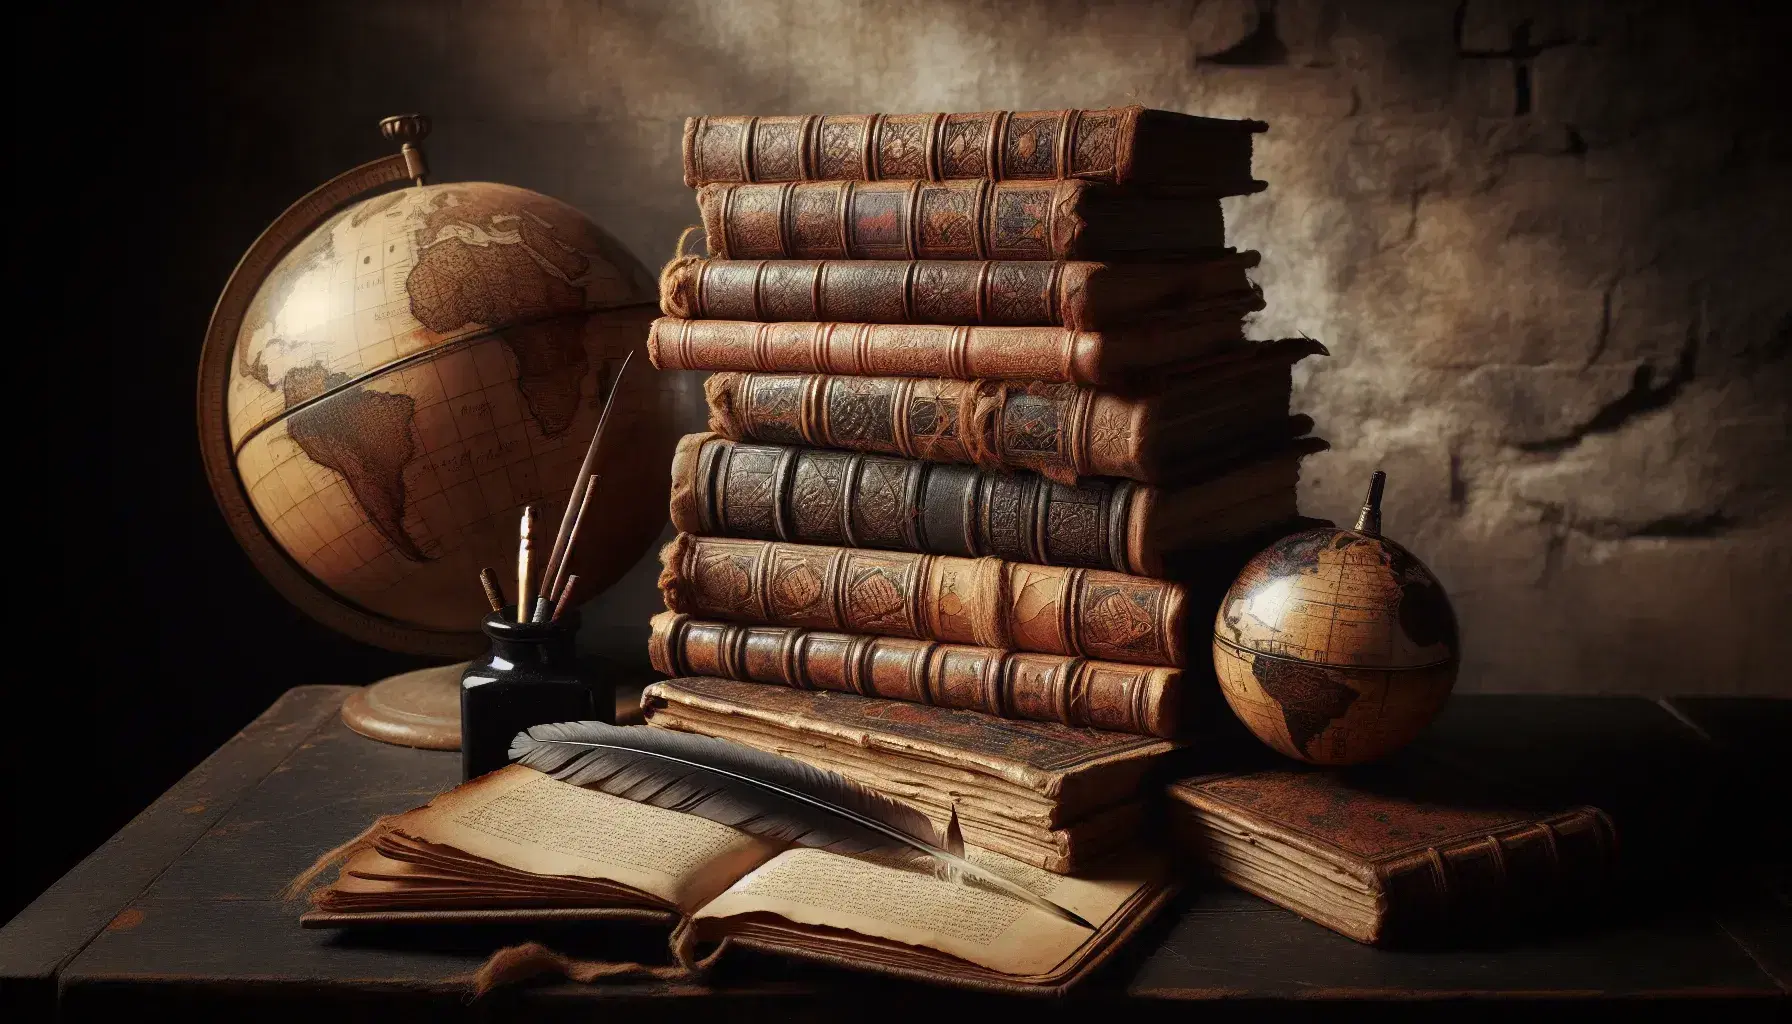 Colección de libros antiguos con tapas de cuero sobre mesa de madera oscura, globo terráqueo desgastado y pluma en tintero al lado.